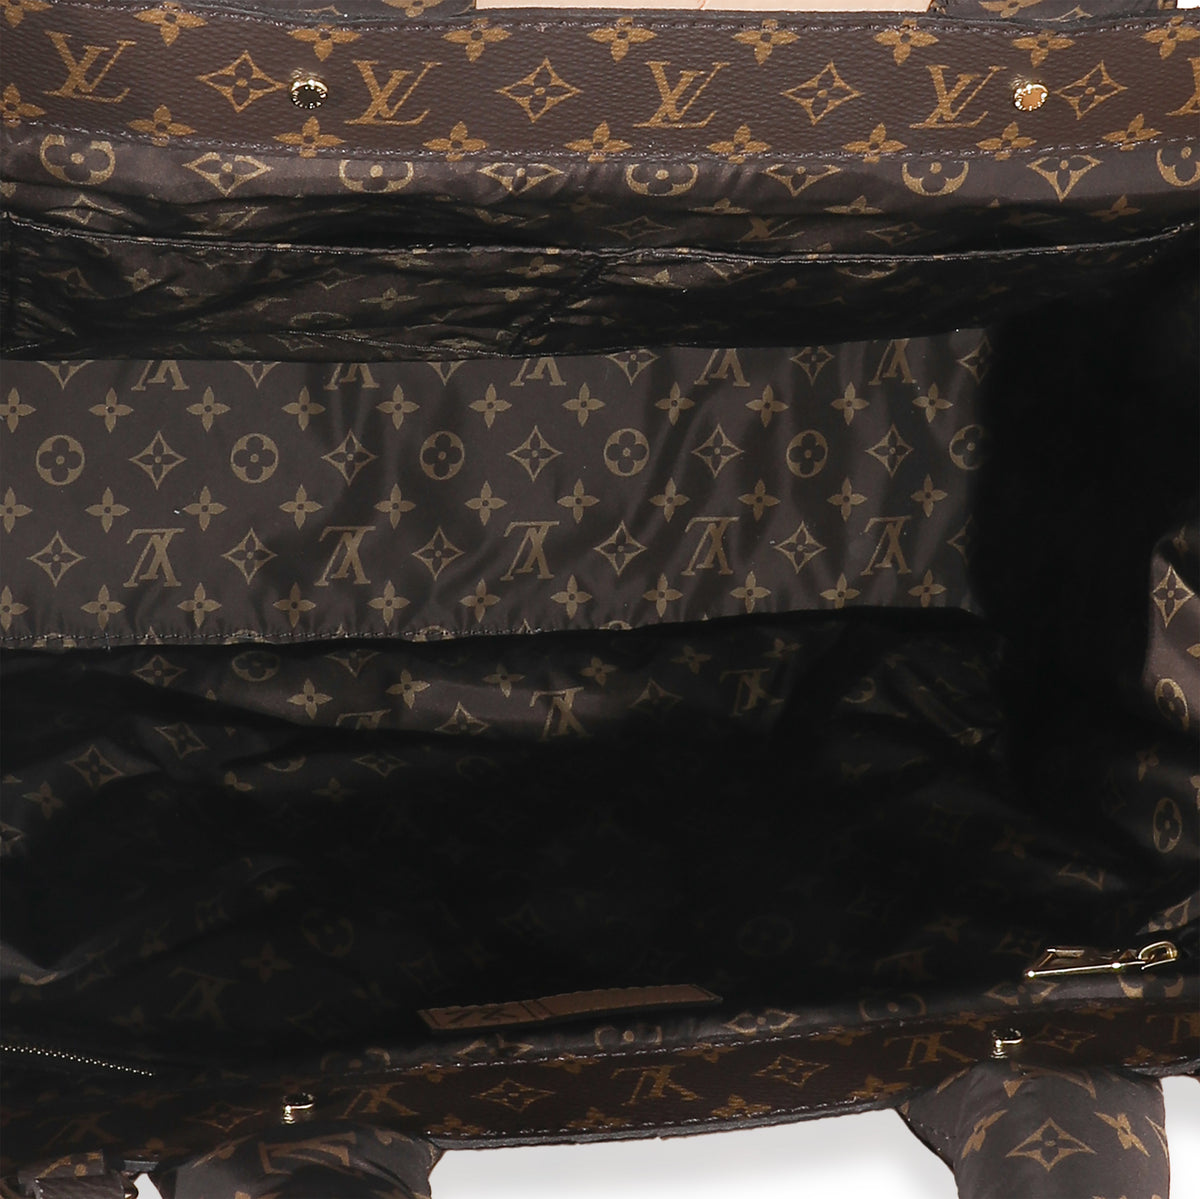 Louis Vuitton Black Nylon Monogram Pillow OnTheGo GM Tote Bag